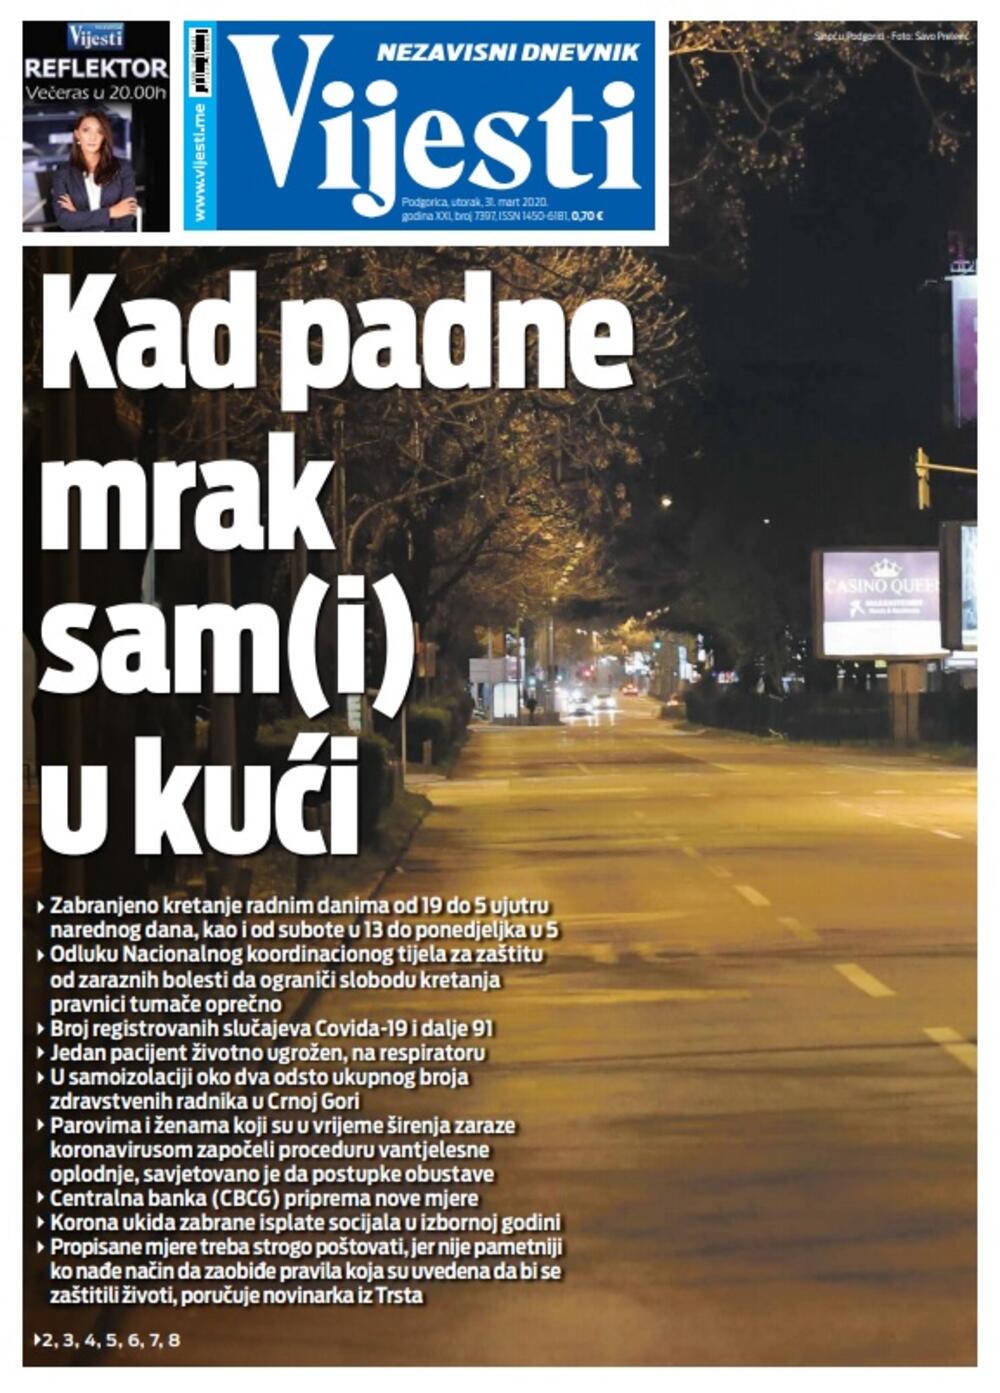 Naslovna strana "Vijesti" za utorak 31. mart 2020. godine